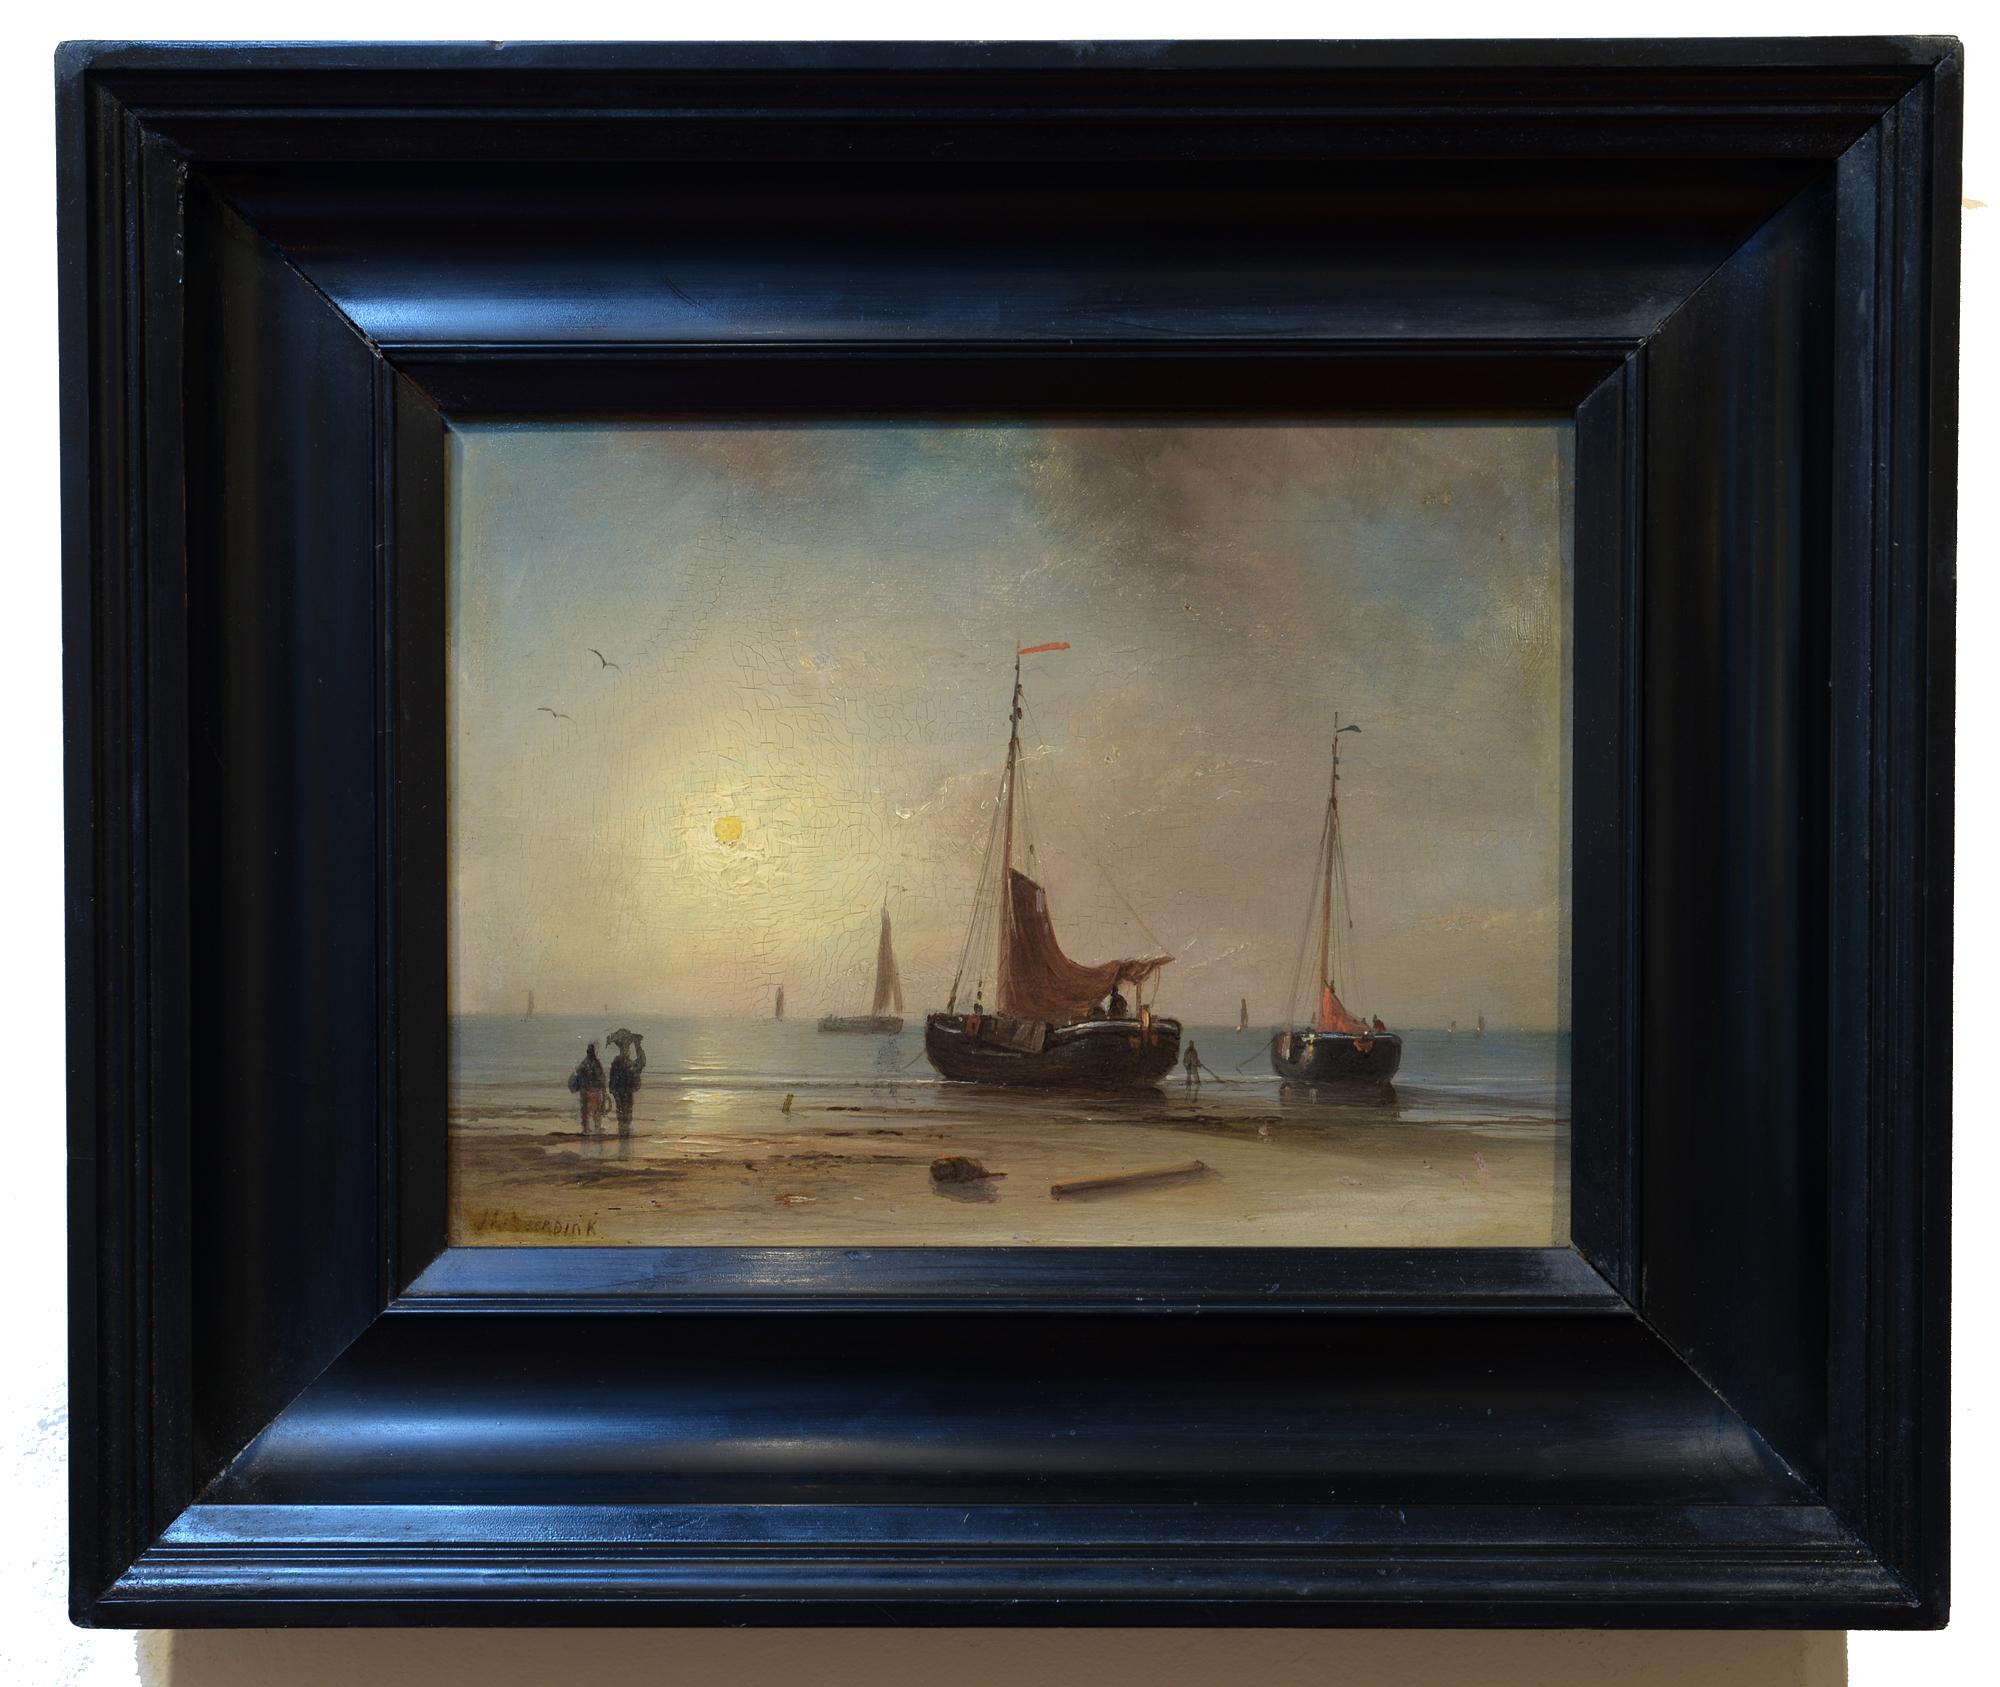 Am Ende des Tages, niederländische, romantische Schule, Leuchtende Hafens Hafenszene – Painting von Johannes Hilverdink